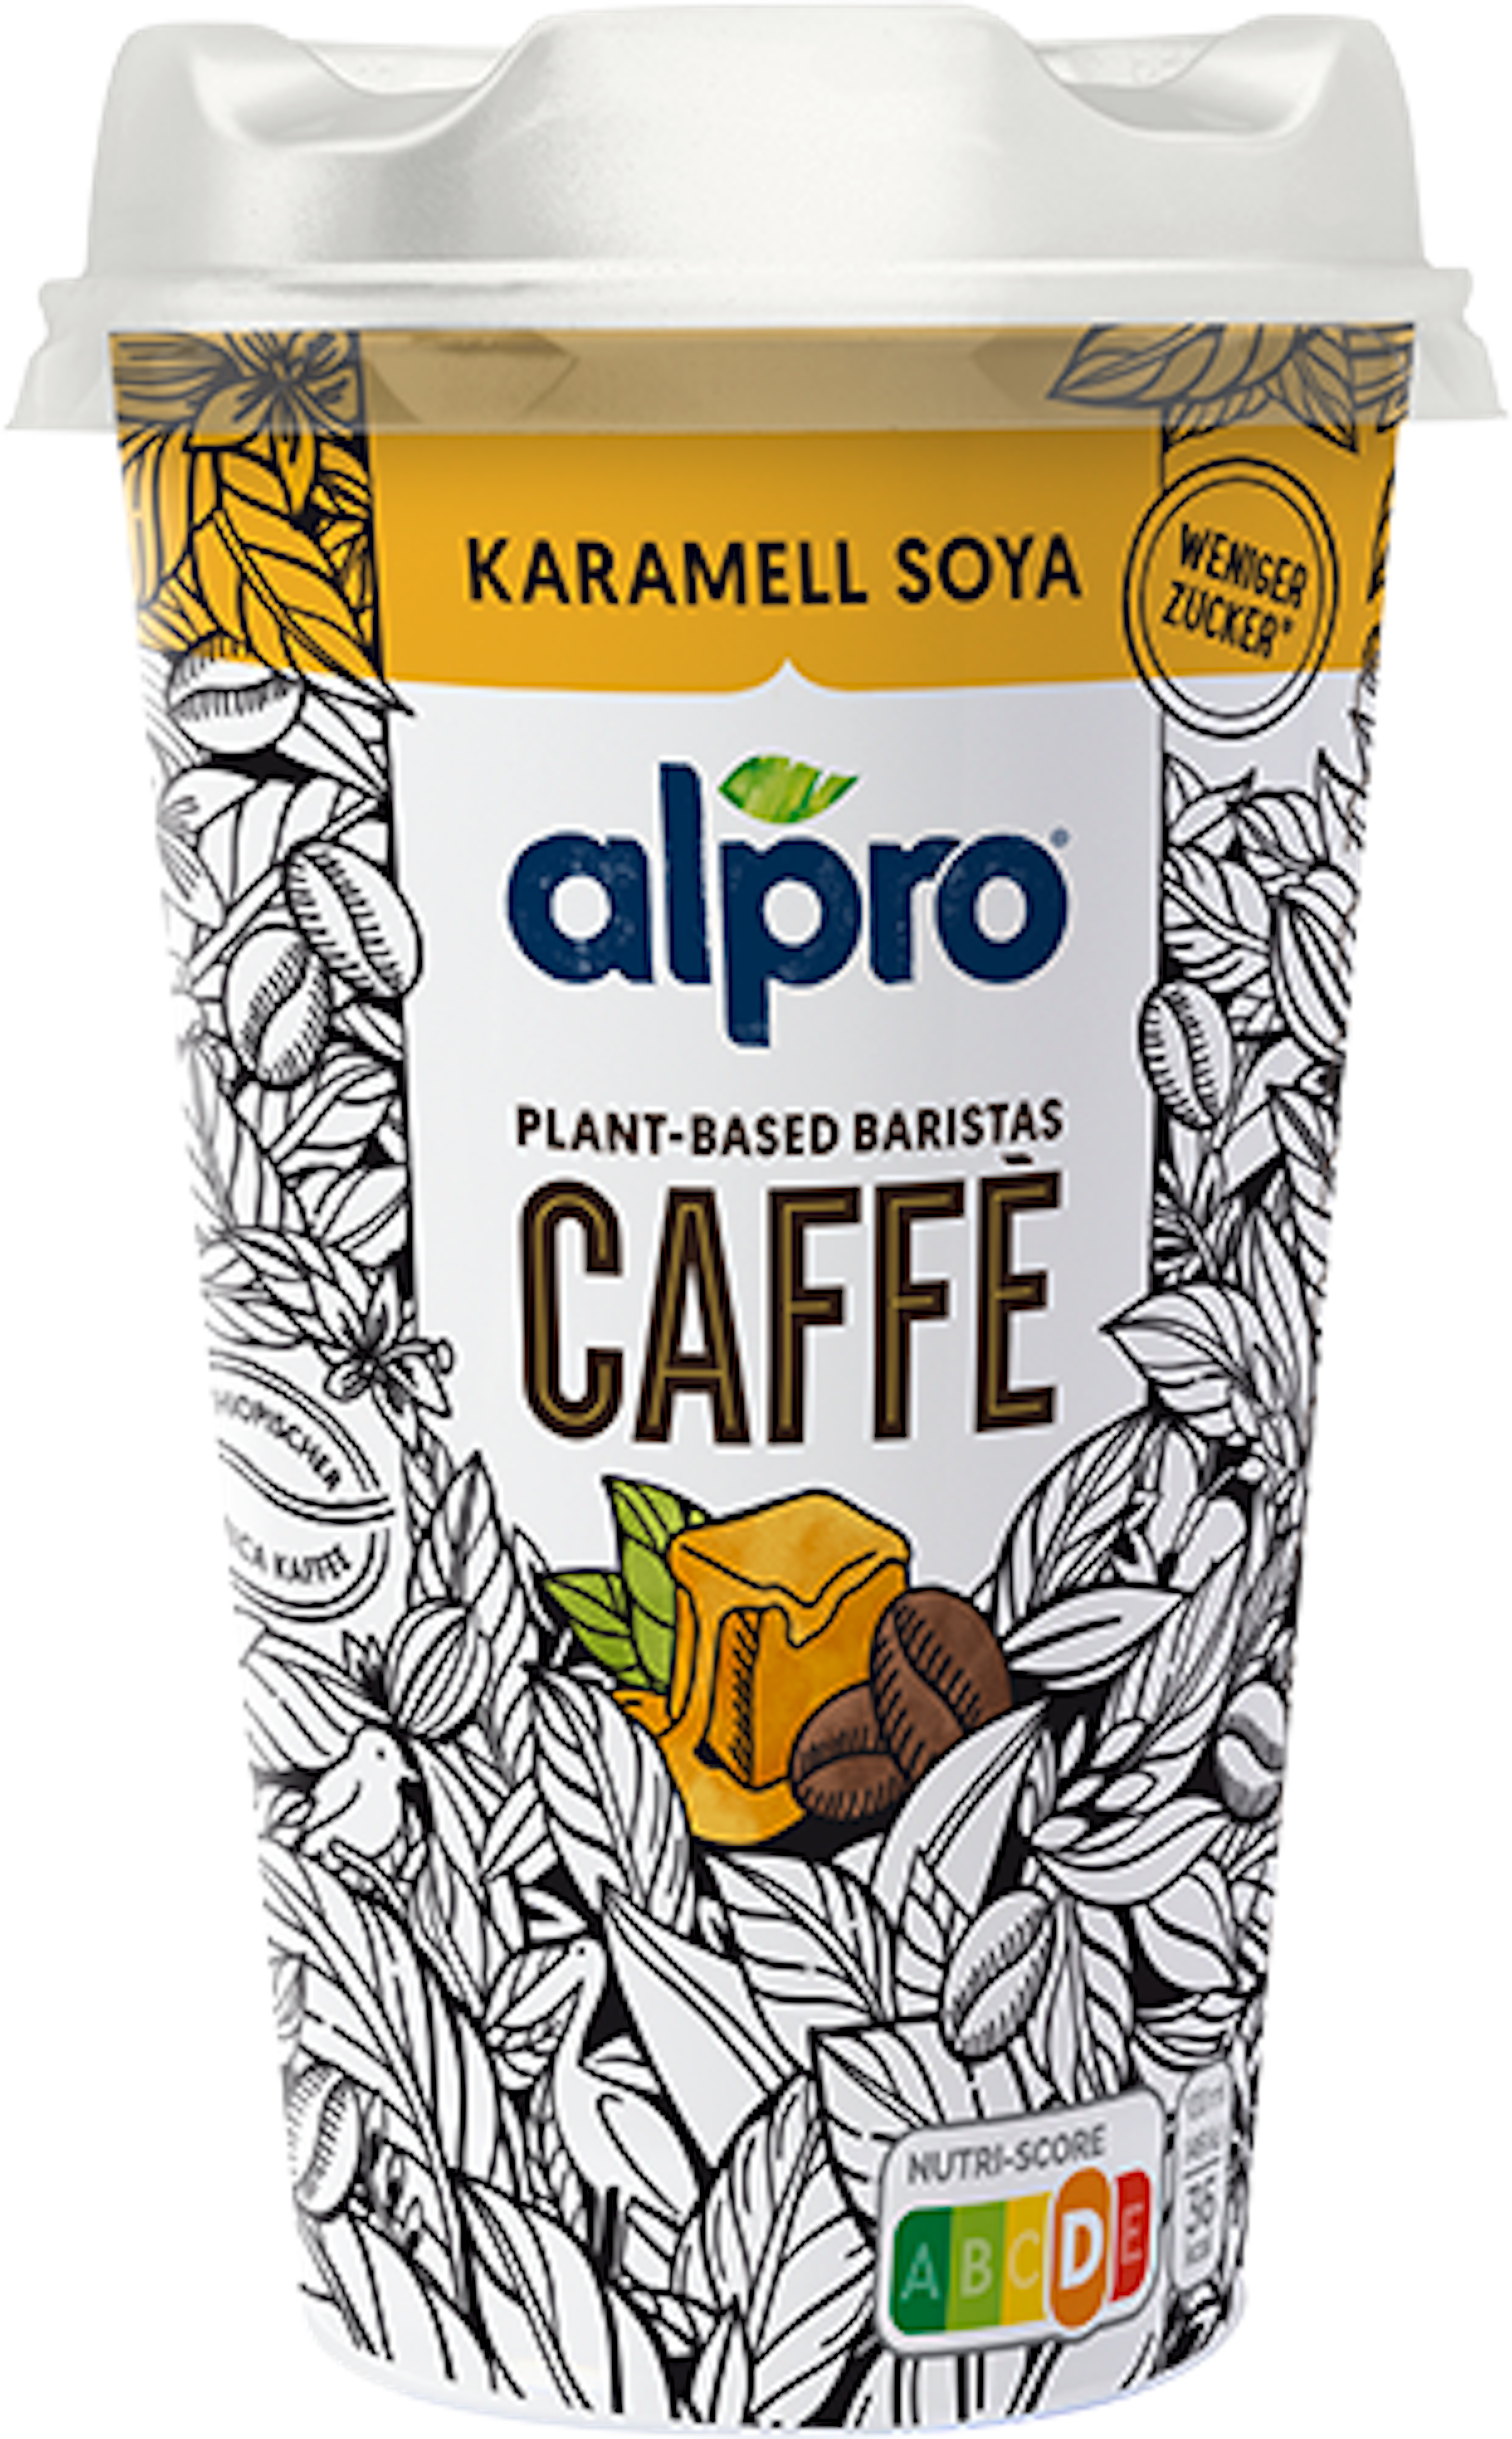 Äthiopischer kaffee & soja karamell